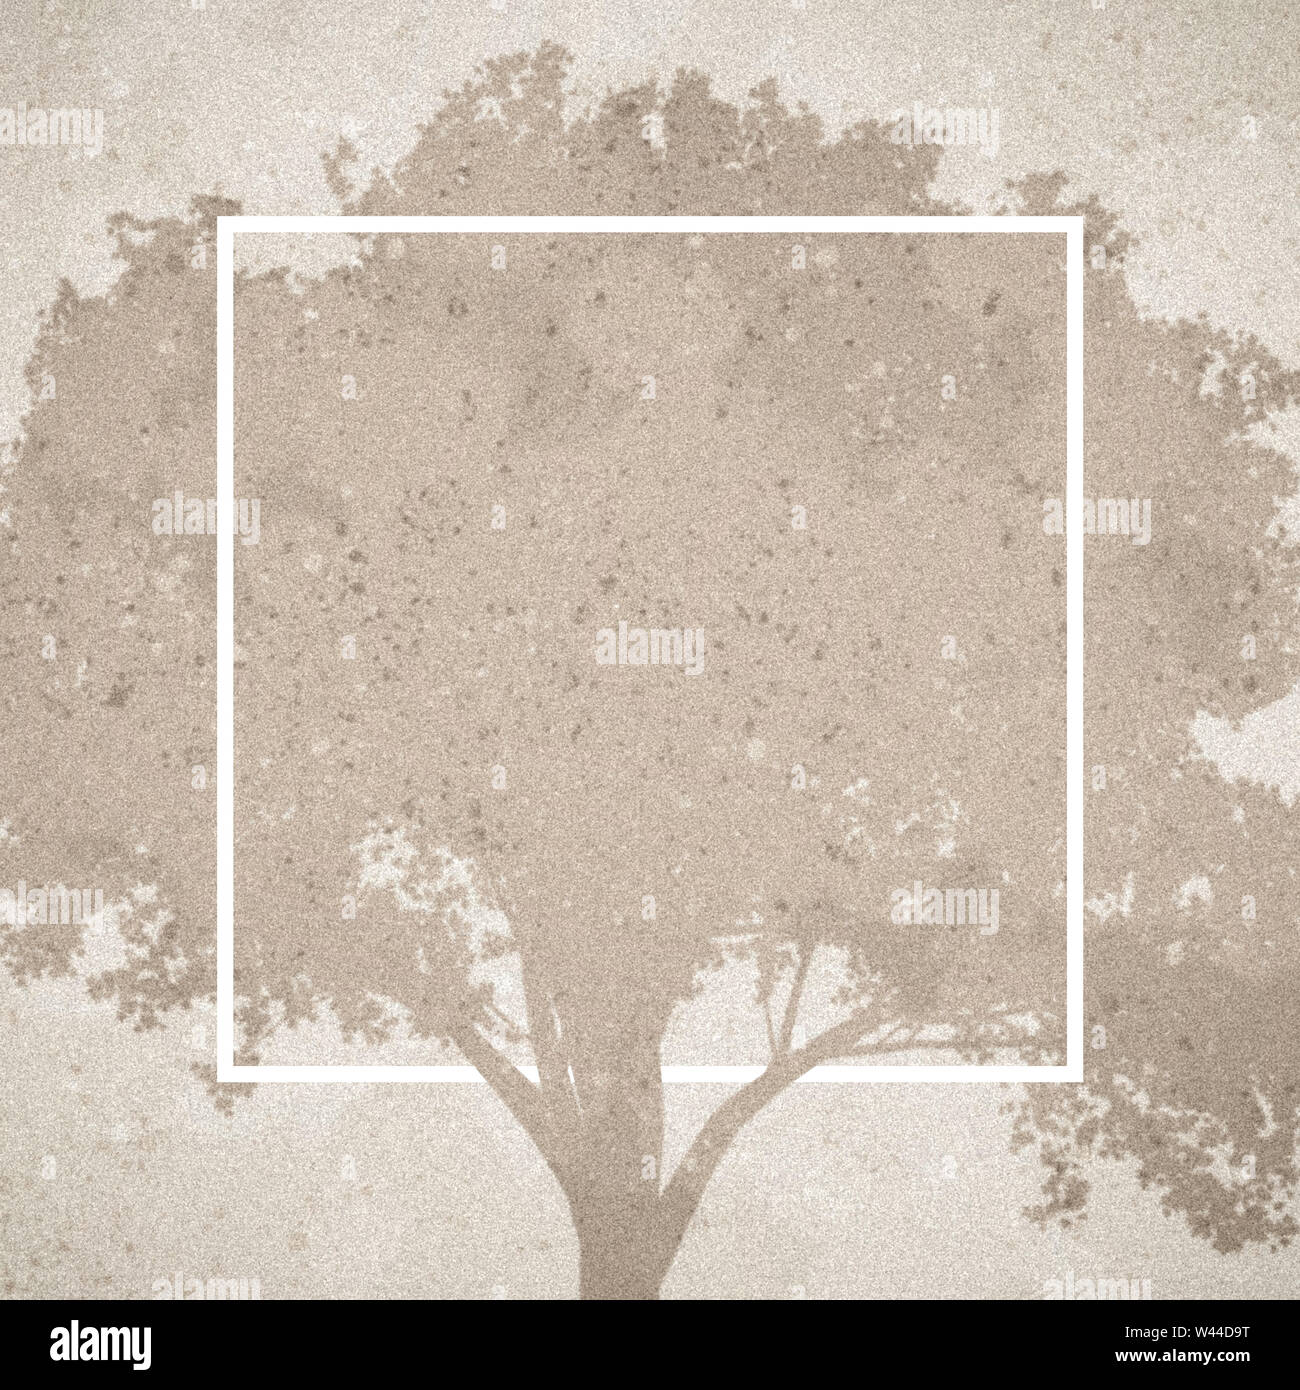 Modèle Grungy graphique illustrant une arborescence dans l'arrière-plan. Banque D'Images